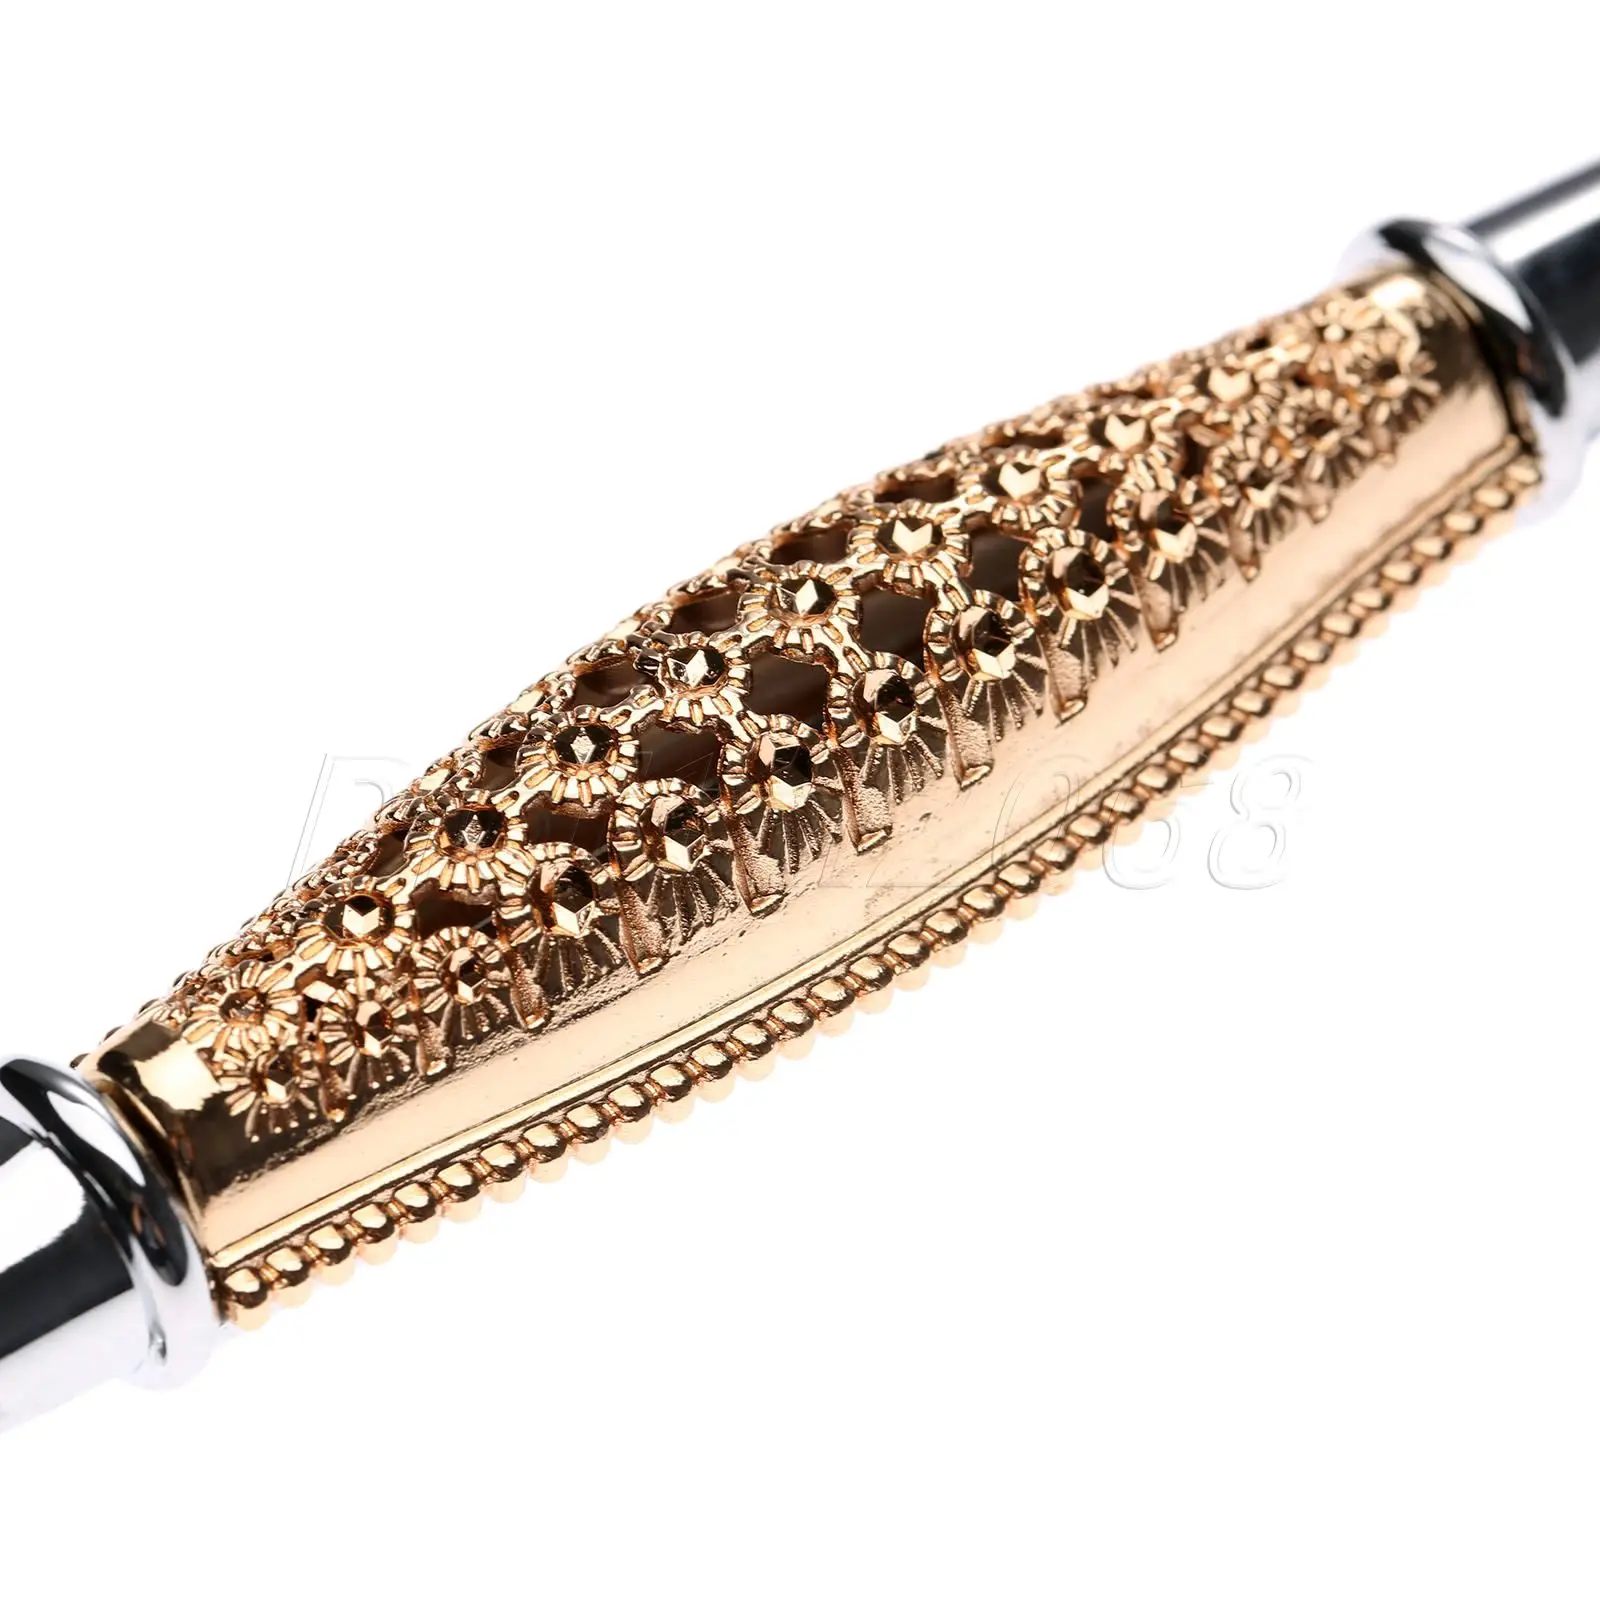 Высокое качество Европейский розовое золото Хромированная ручка для шкафа дверные ручки для гардероба ручки для ящиков комода ручка кухонного шкафа ручки